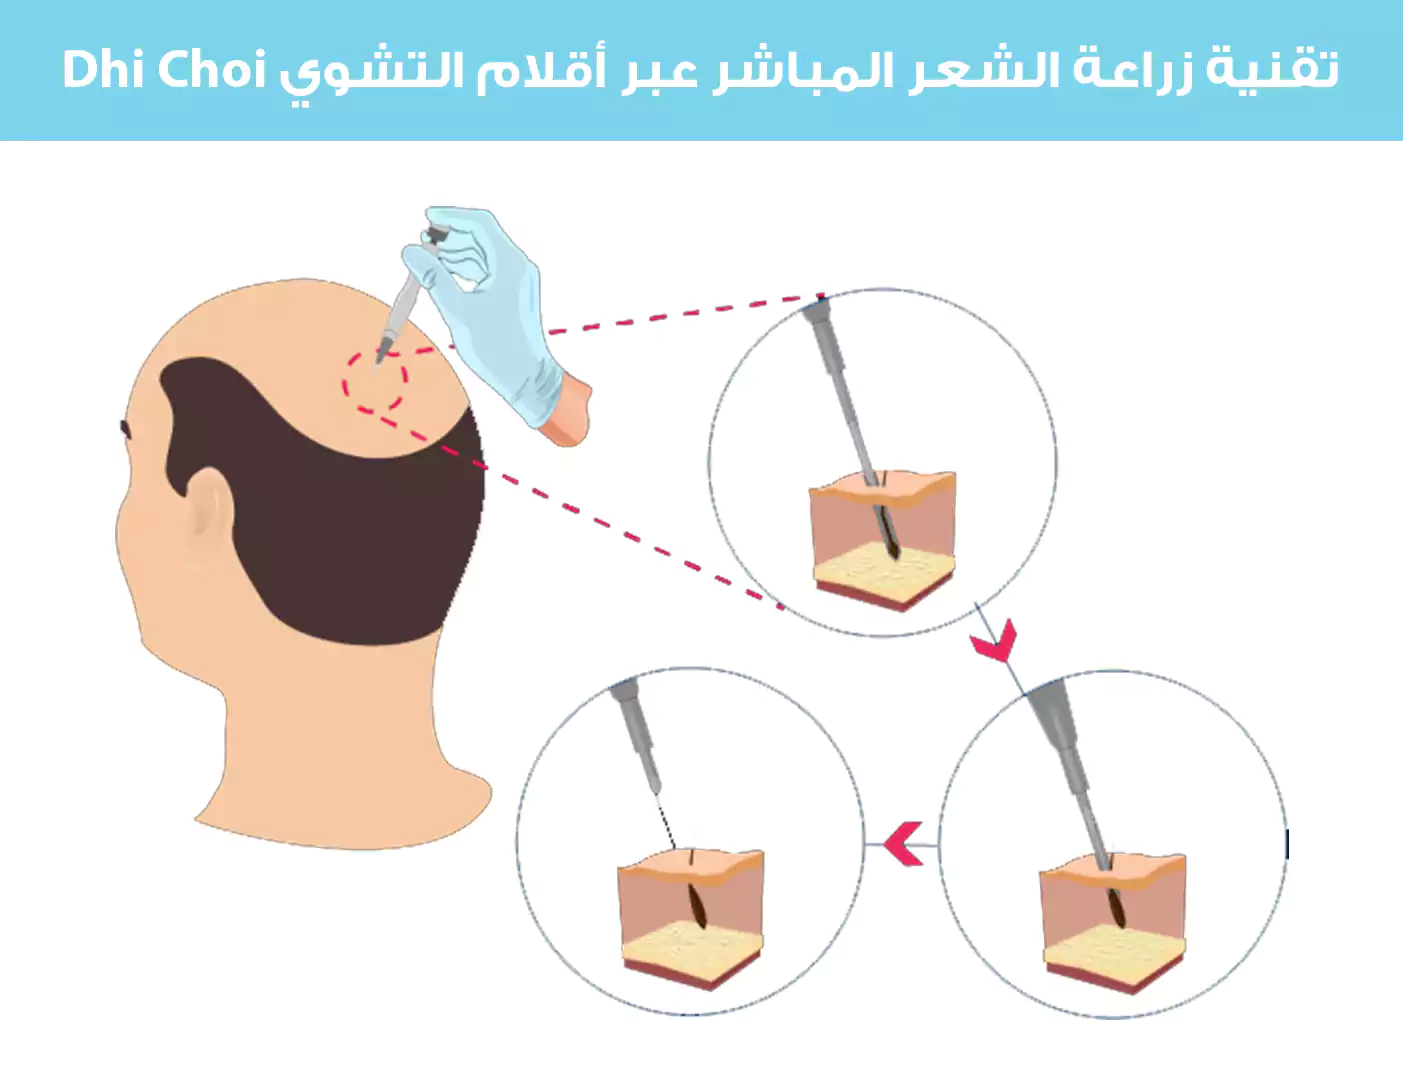 Dhi Choi kalemleri kullanılarak direkt saç ekimi tekniğini gösteren bir görsel